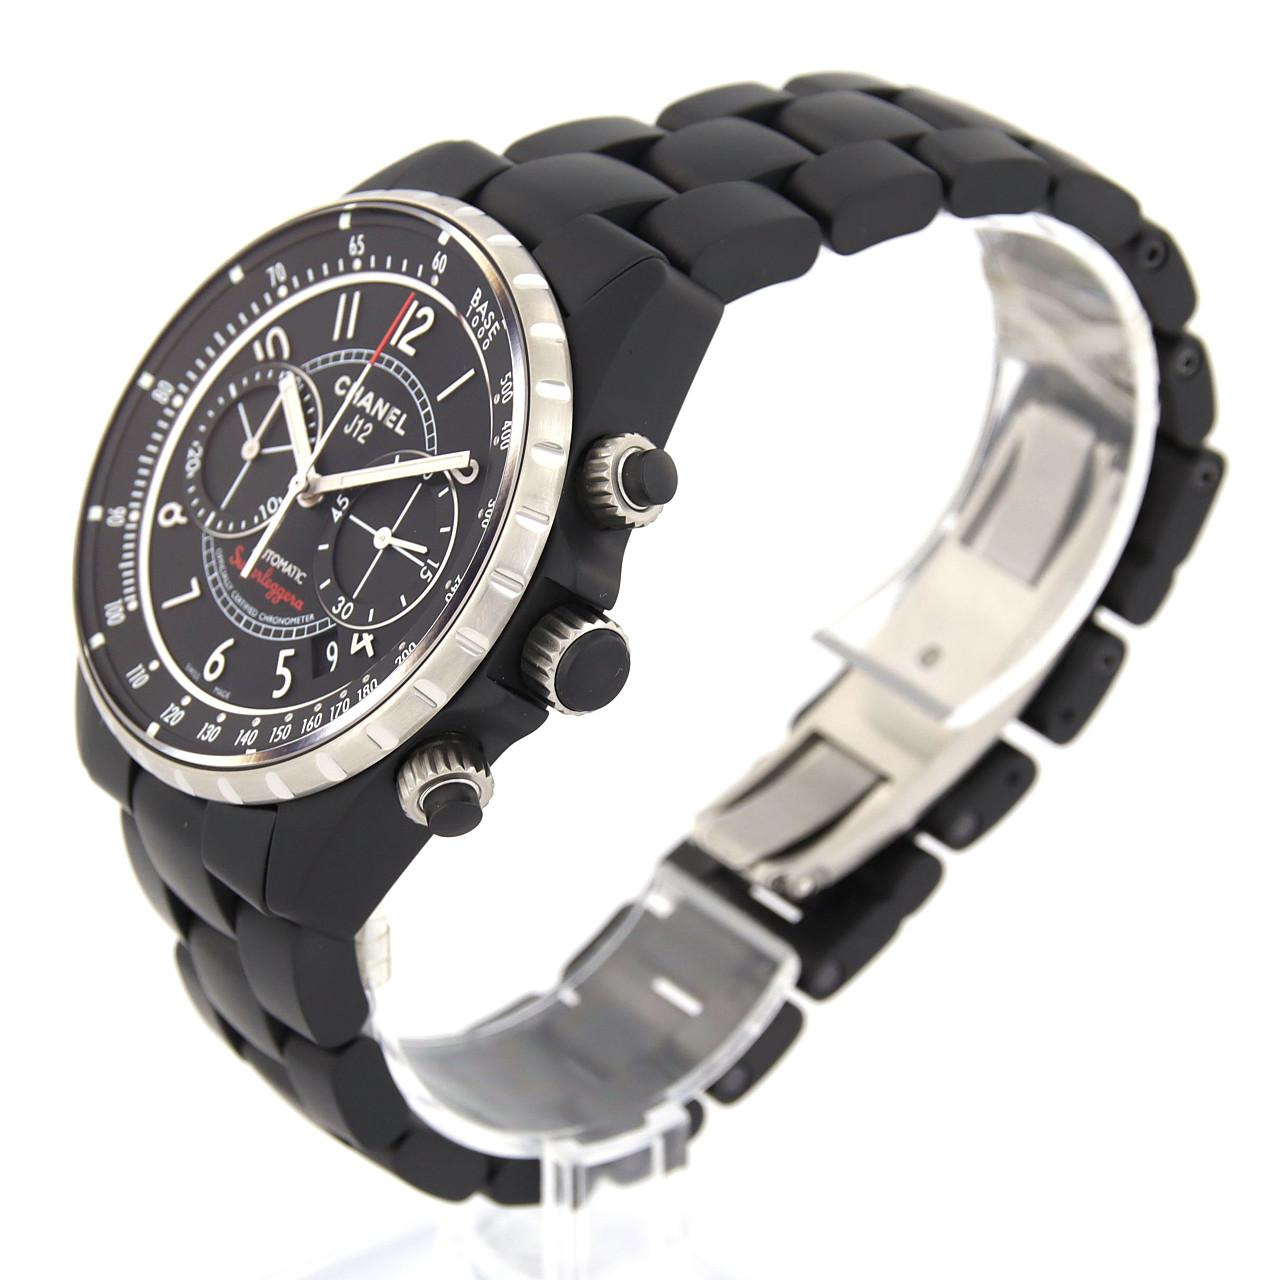 シャネル J12 スーパーレッジェーラ 腕時計 時計 セラミック 自動巻き メンズ 1年保証 CHANEL